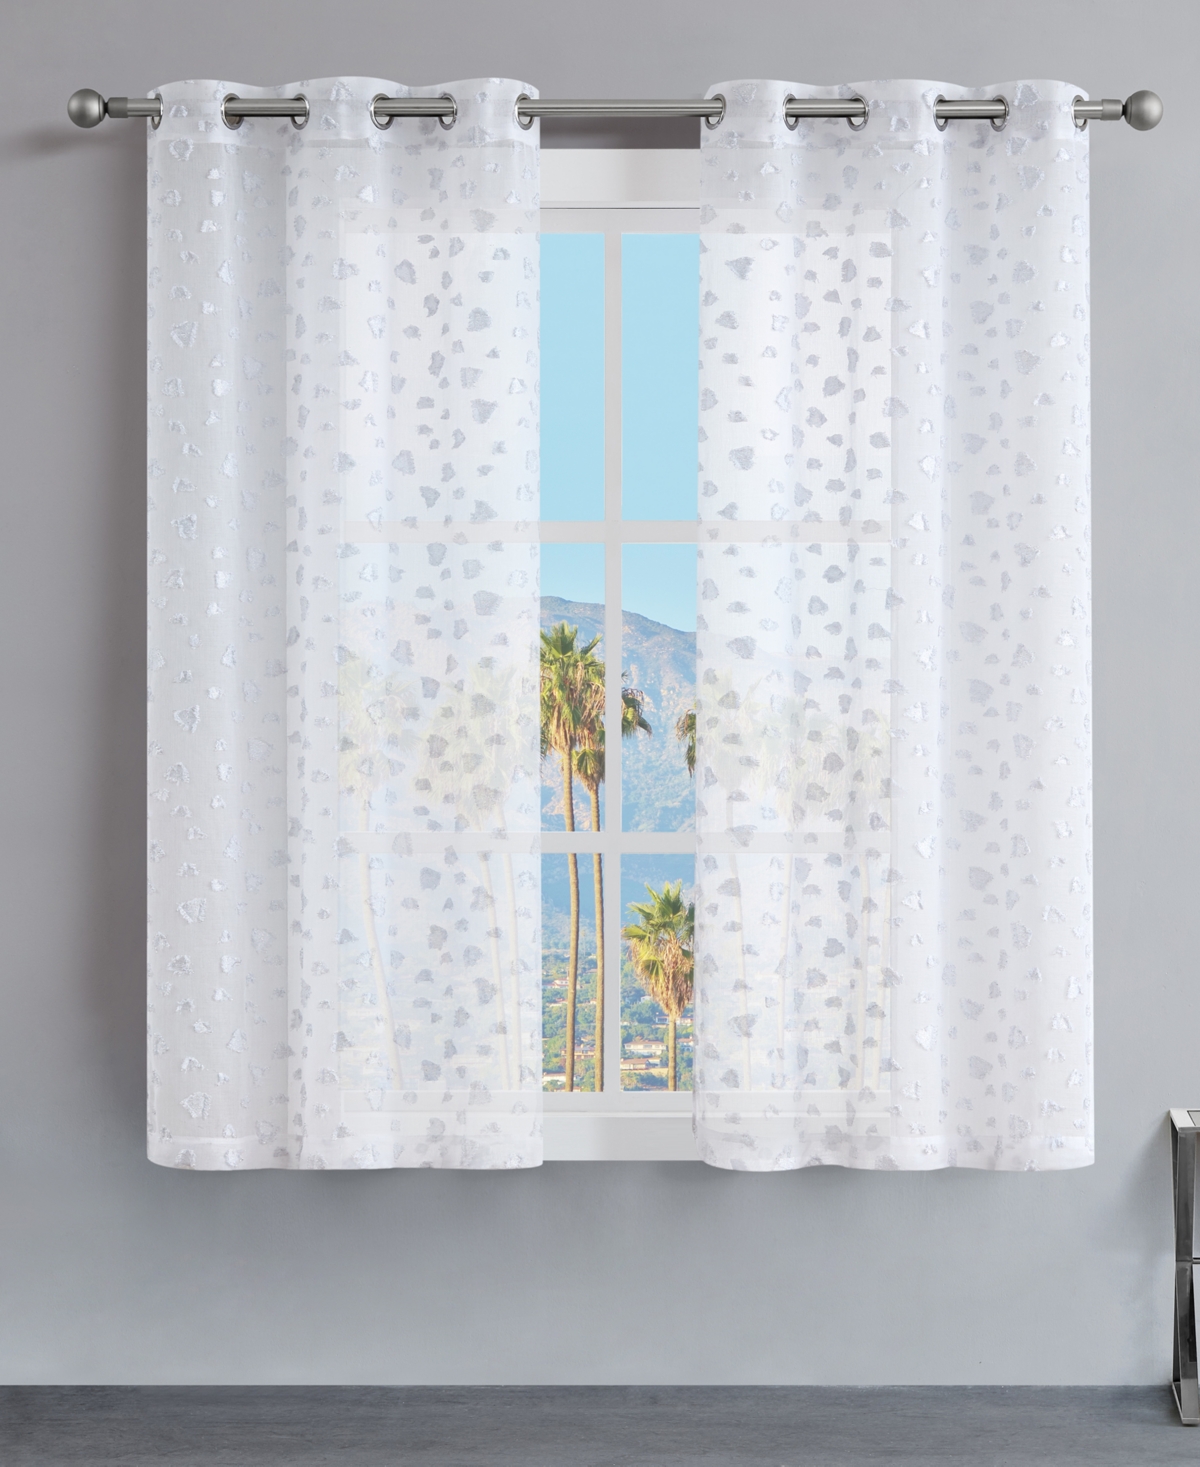 Ethel Leopard Embellished Sheer Grommet Window Curtain Panel Set, 38" x 63" - Black